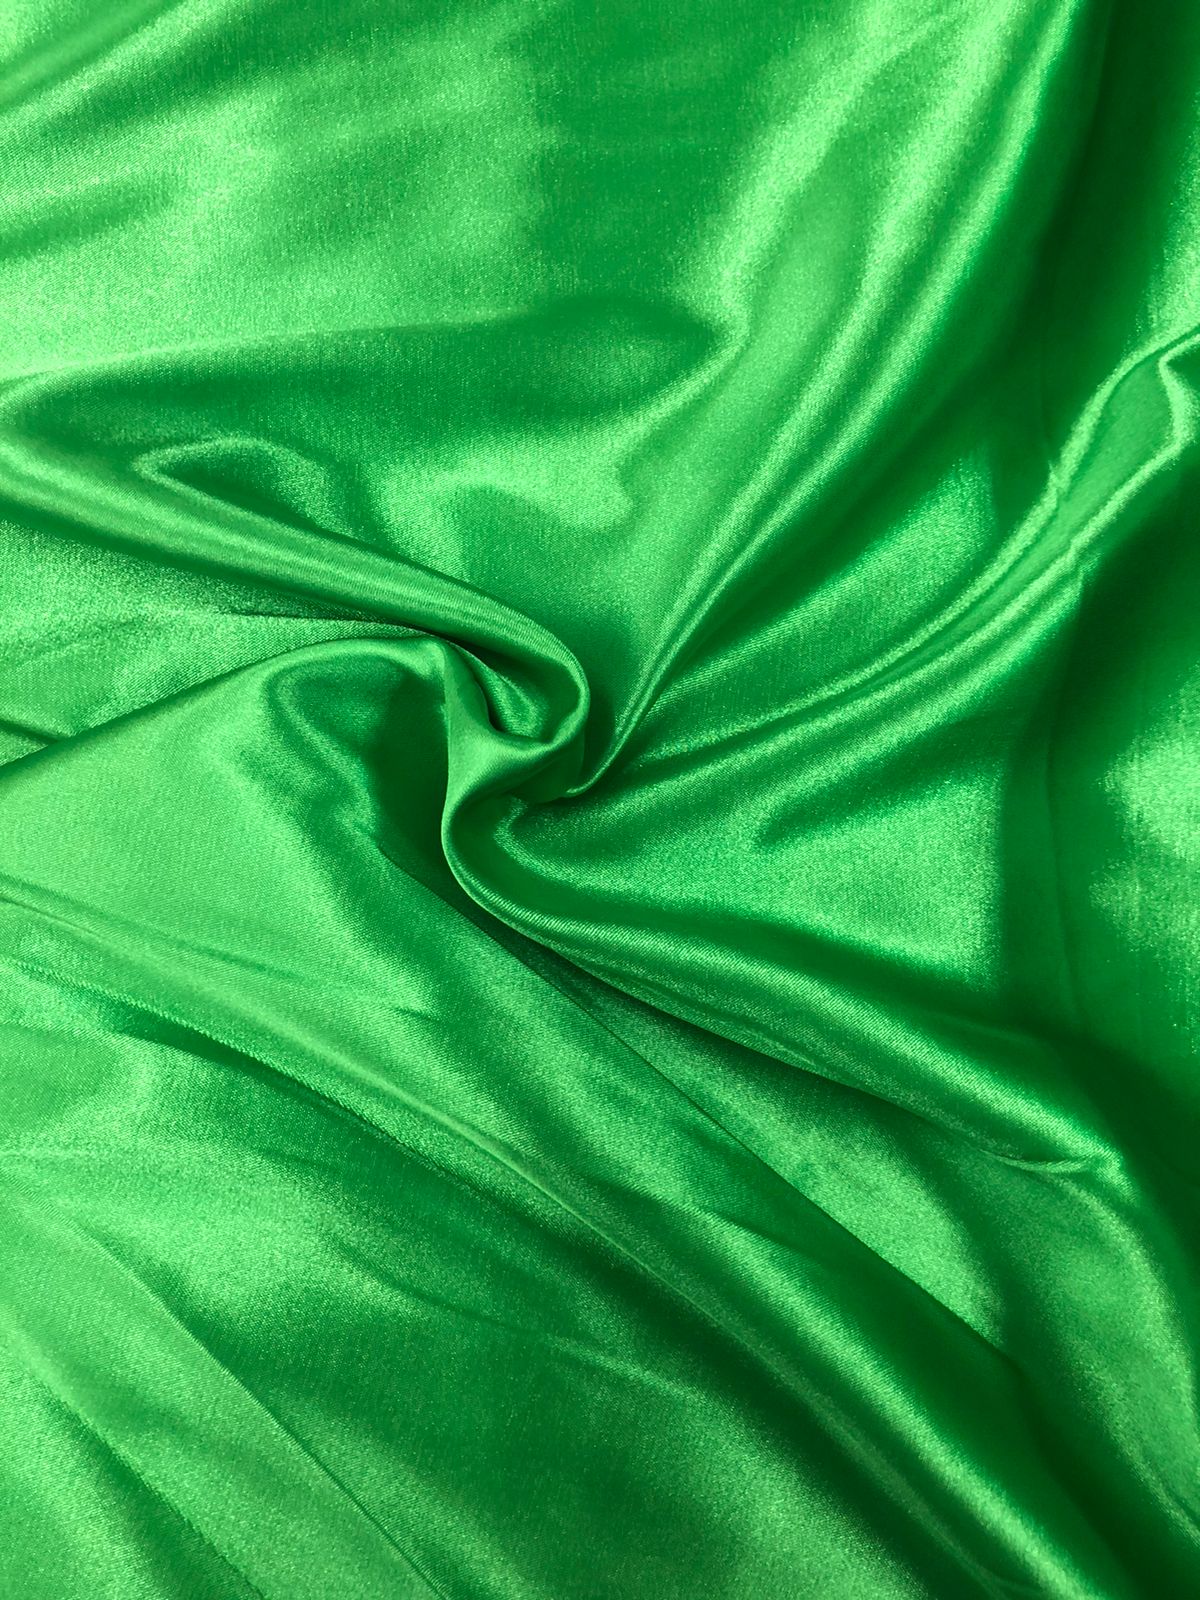 Tecido de Cetim Verde Bandeira com Elastano.